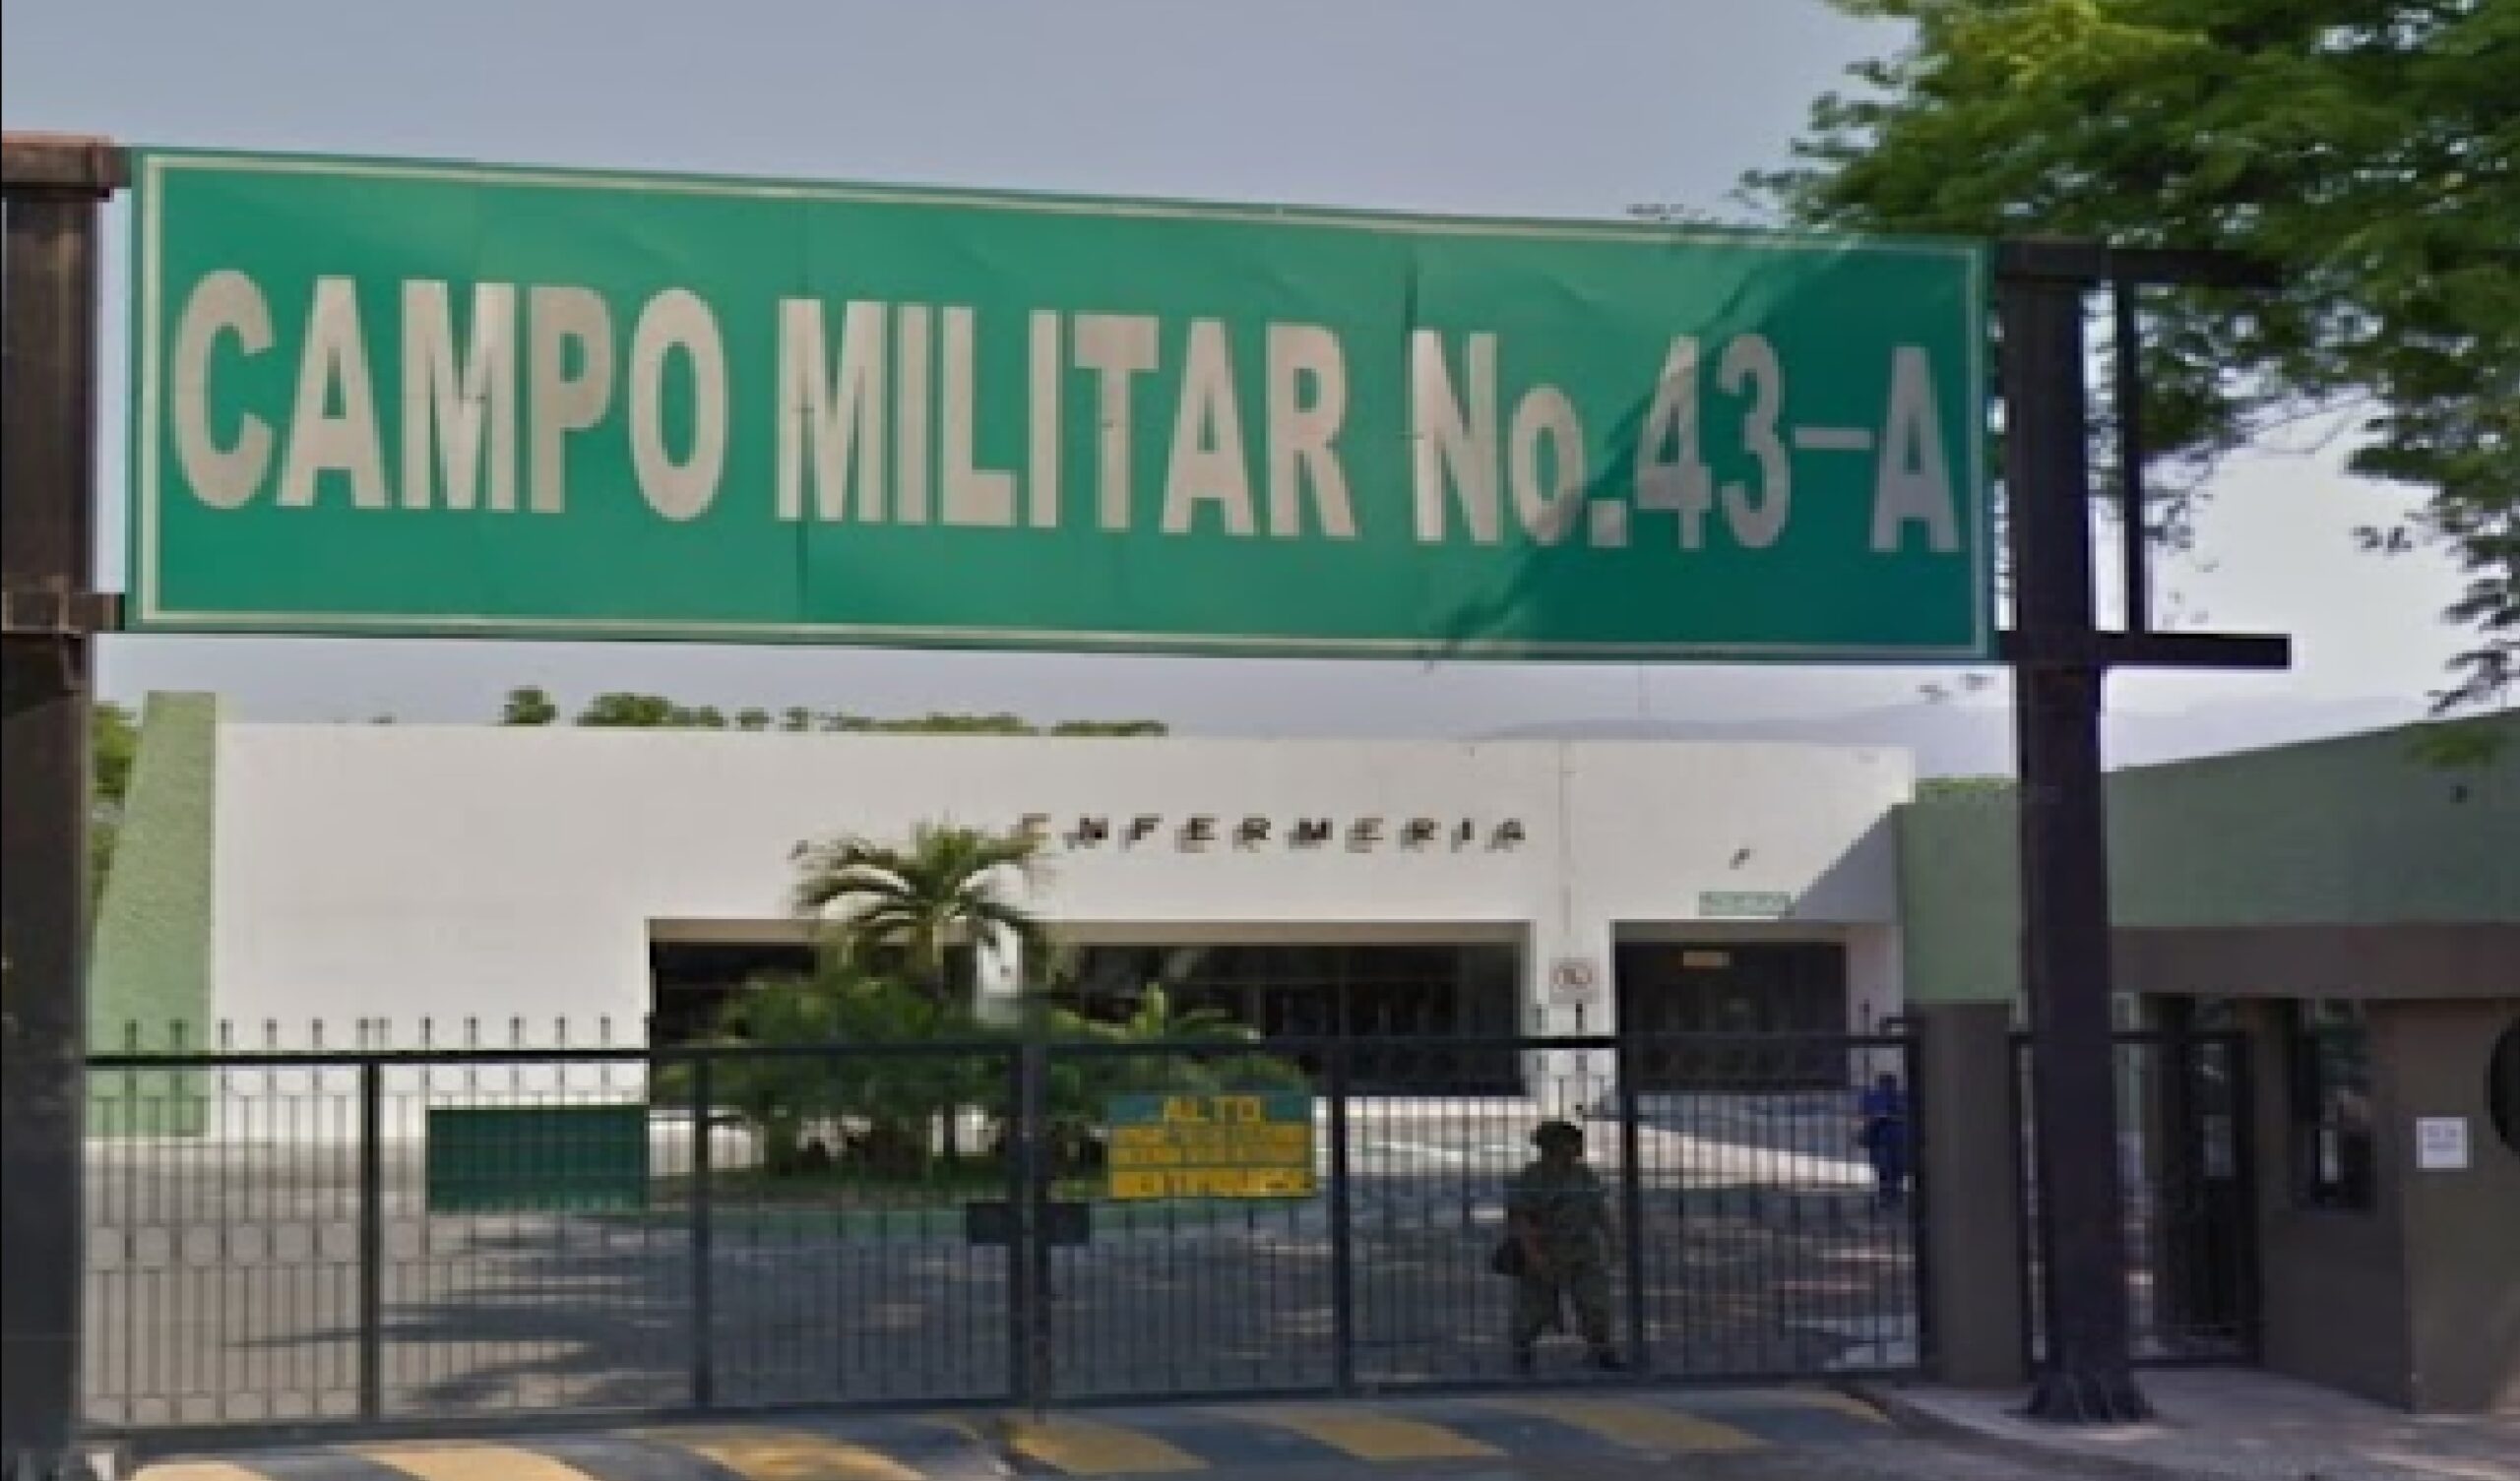 Los Viagras compran armas frente al Ejército en Apatzingán, y no los detienen